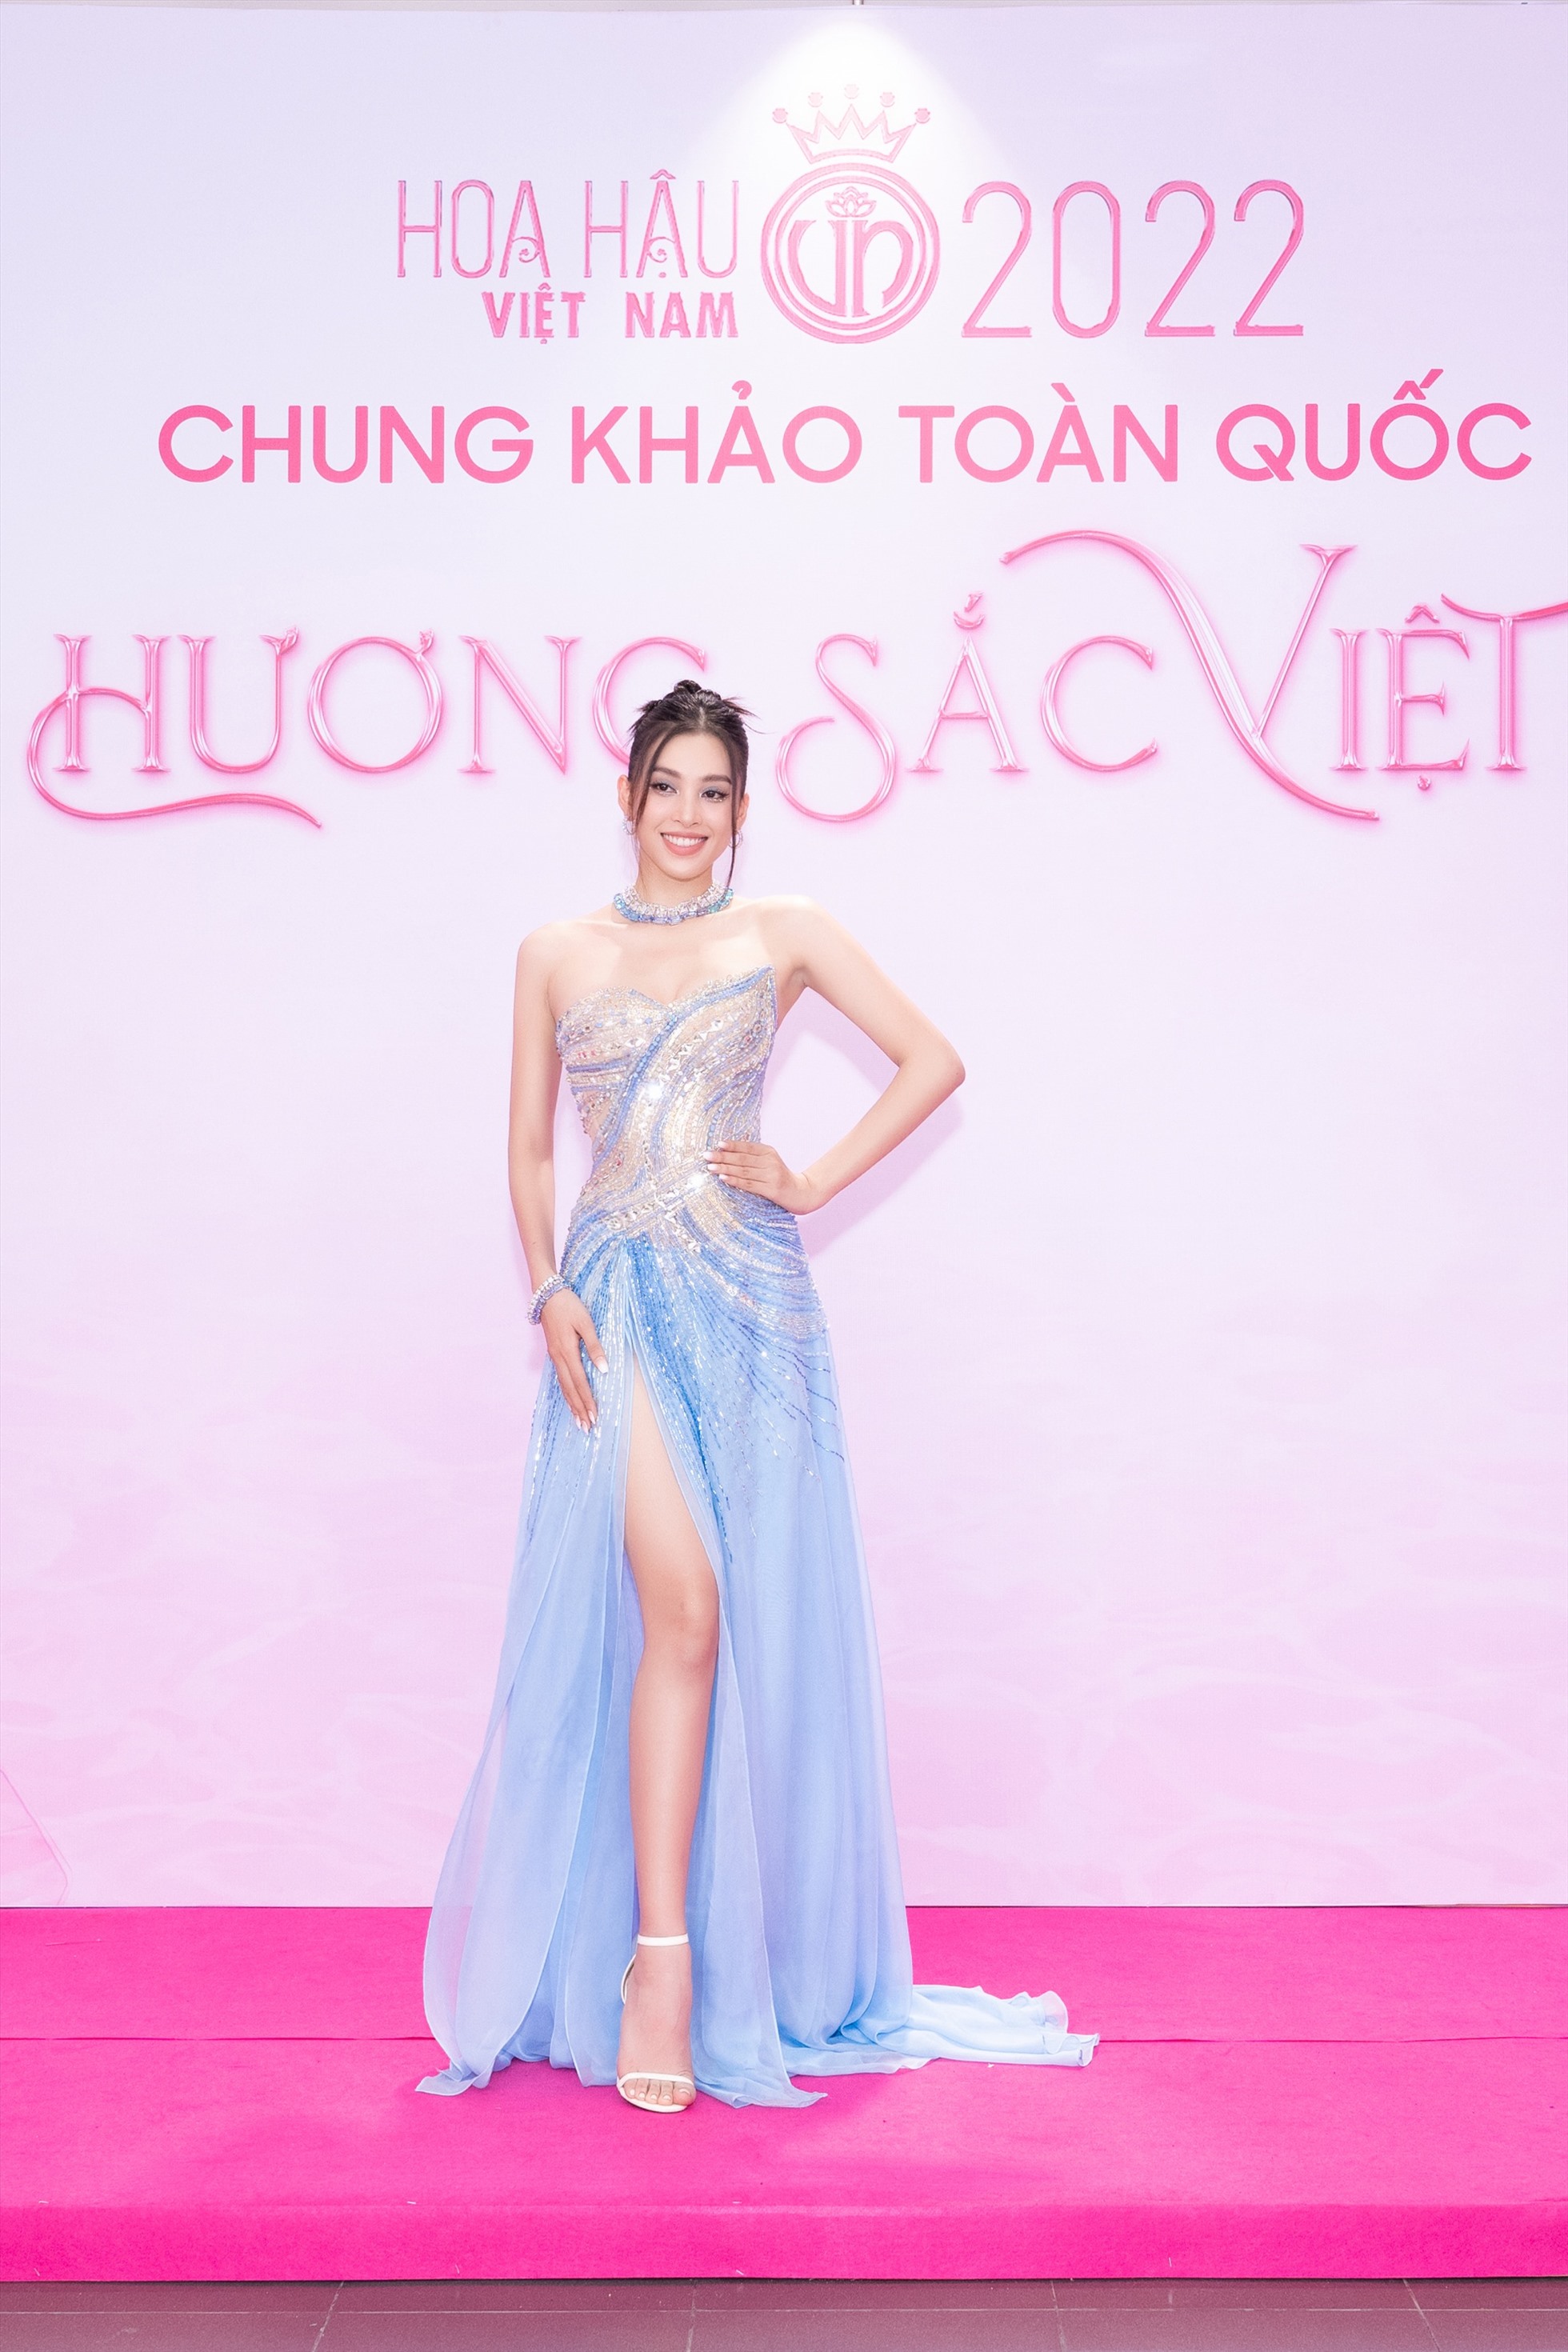 Hoa hậu Trần Tiểu Vy lựa chọn chiếc đầm mang tone màu xanh dương với hiệu ứng đính kết và điểm nhấn xẻ tà, khoe chân dài.